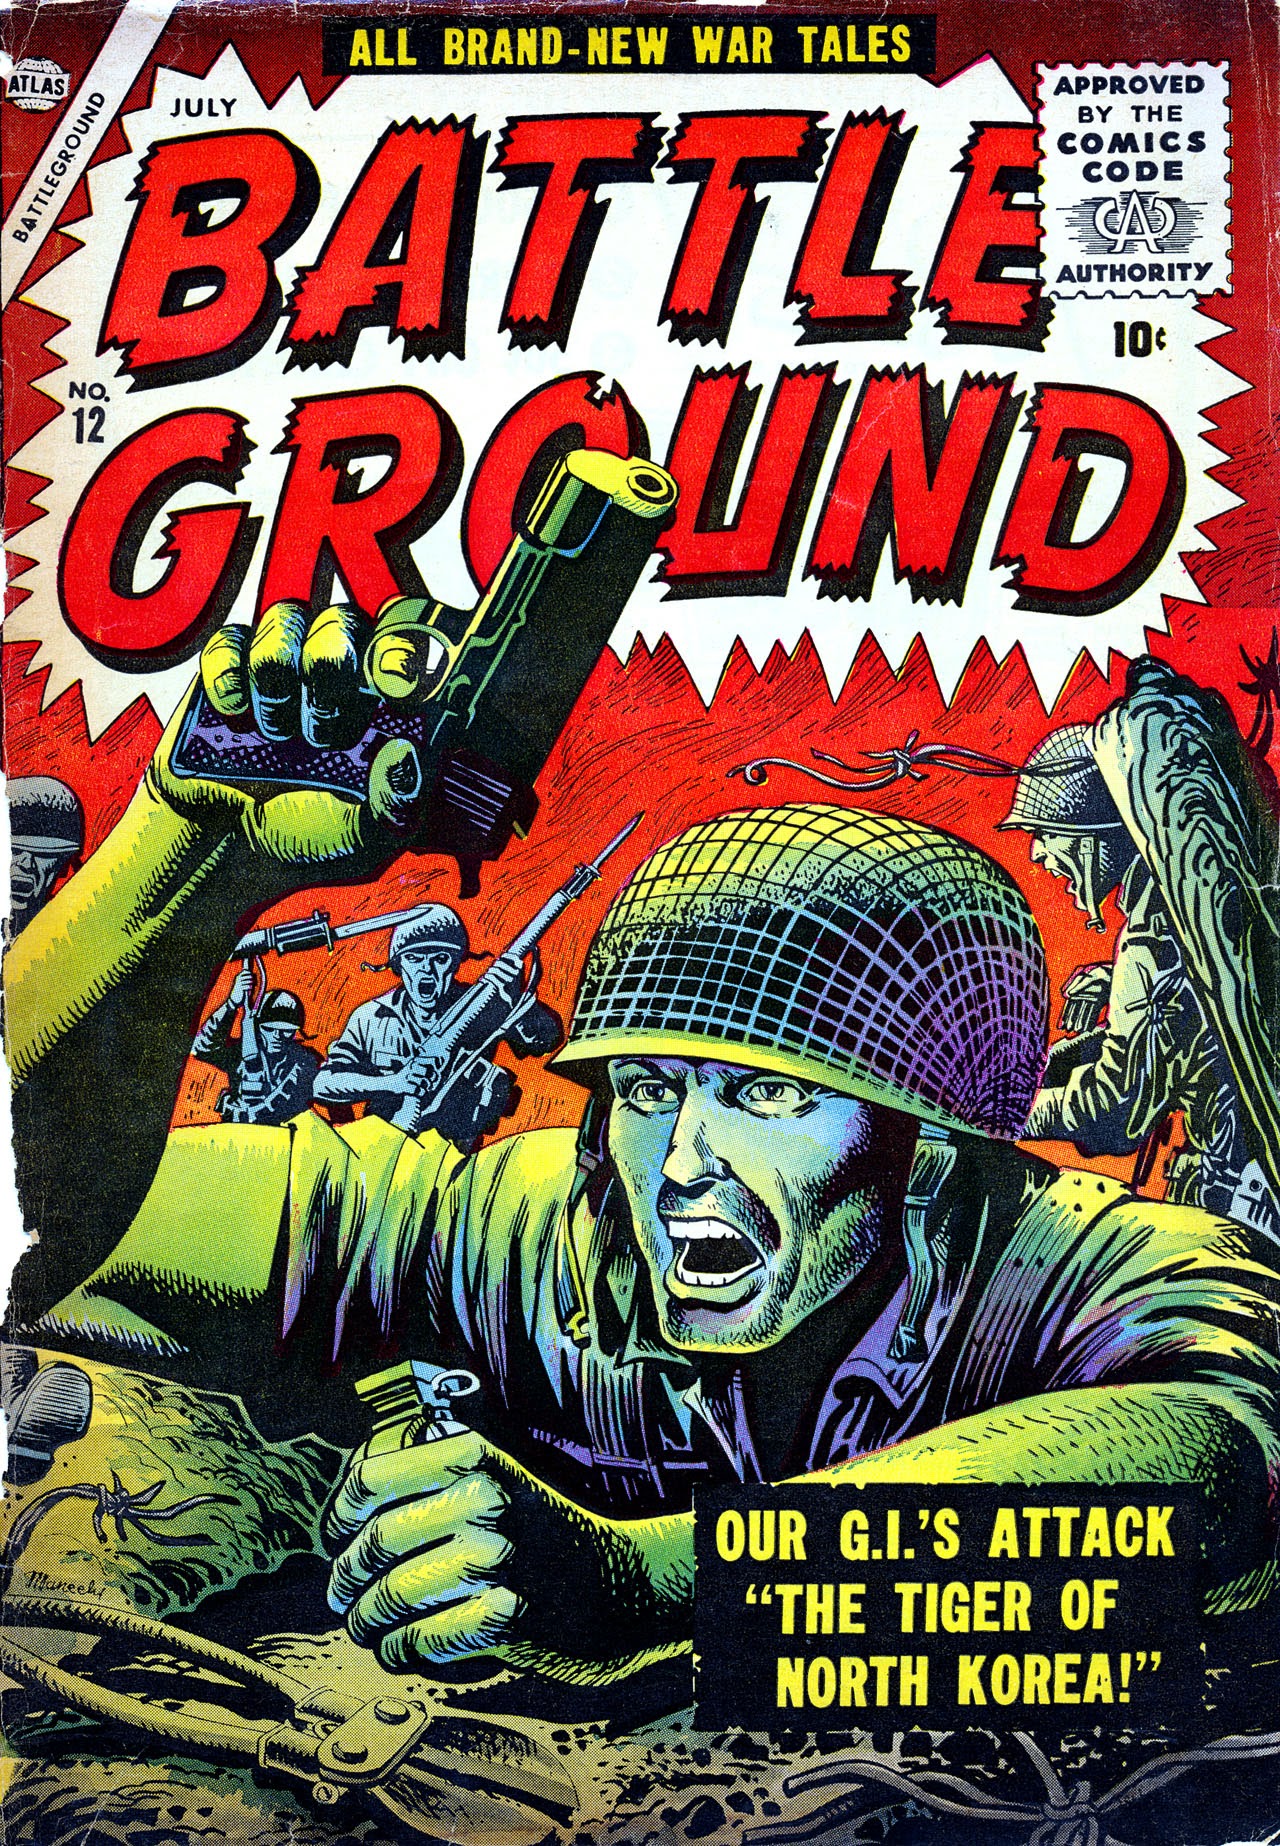 Read online Battleground comic -  Issue #12 - 1